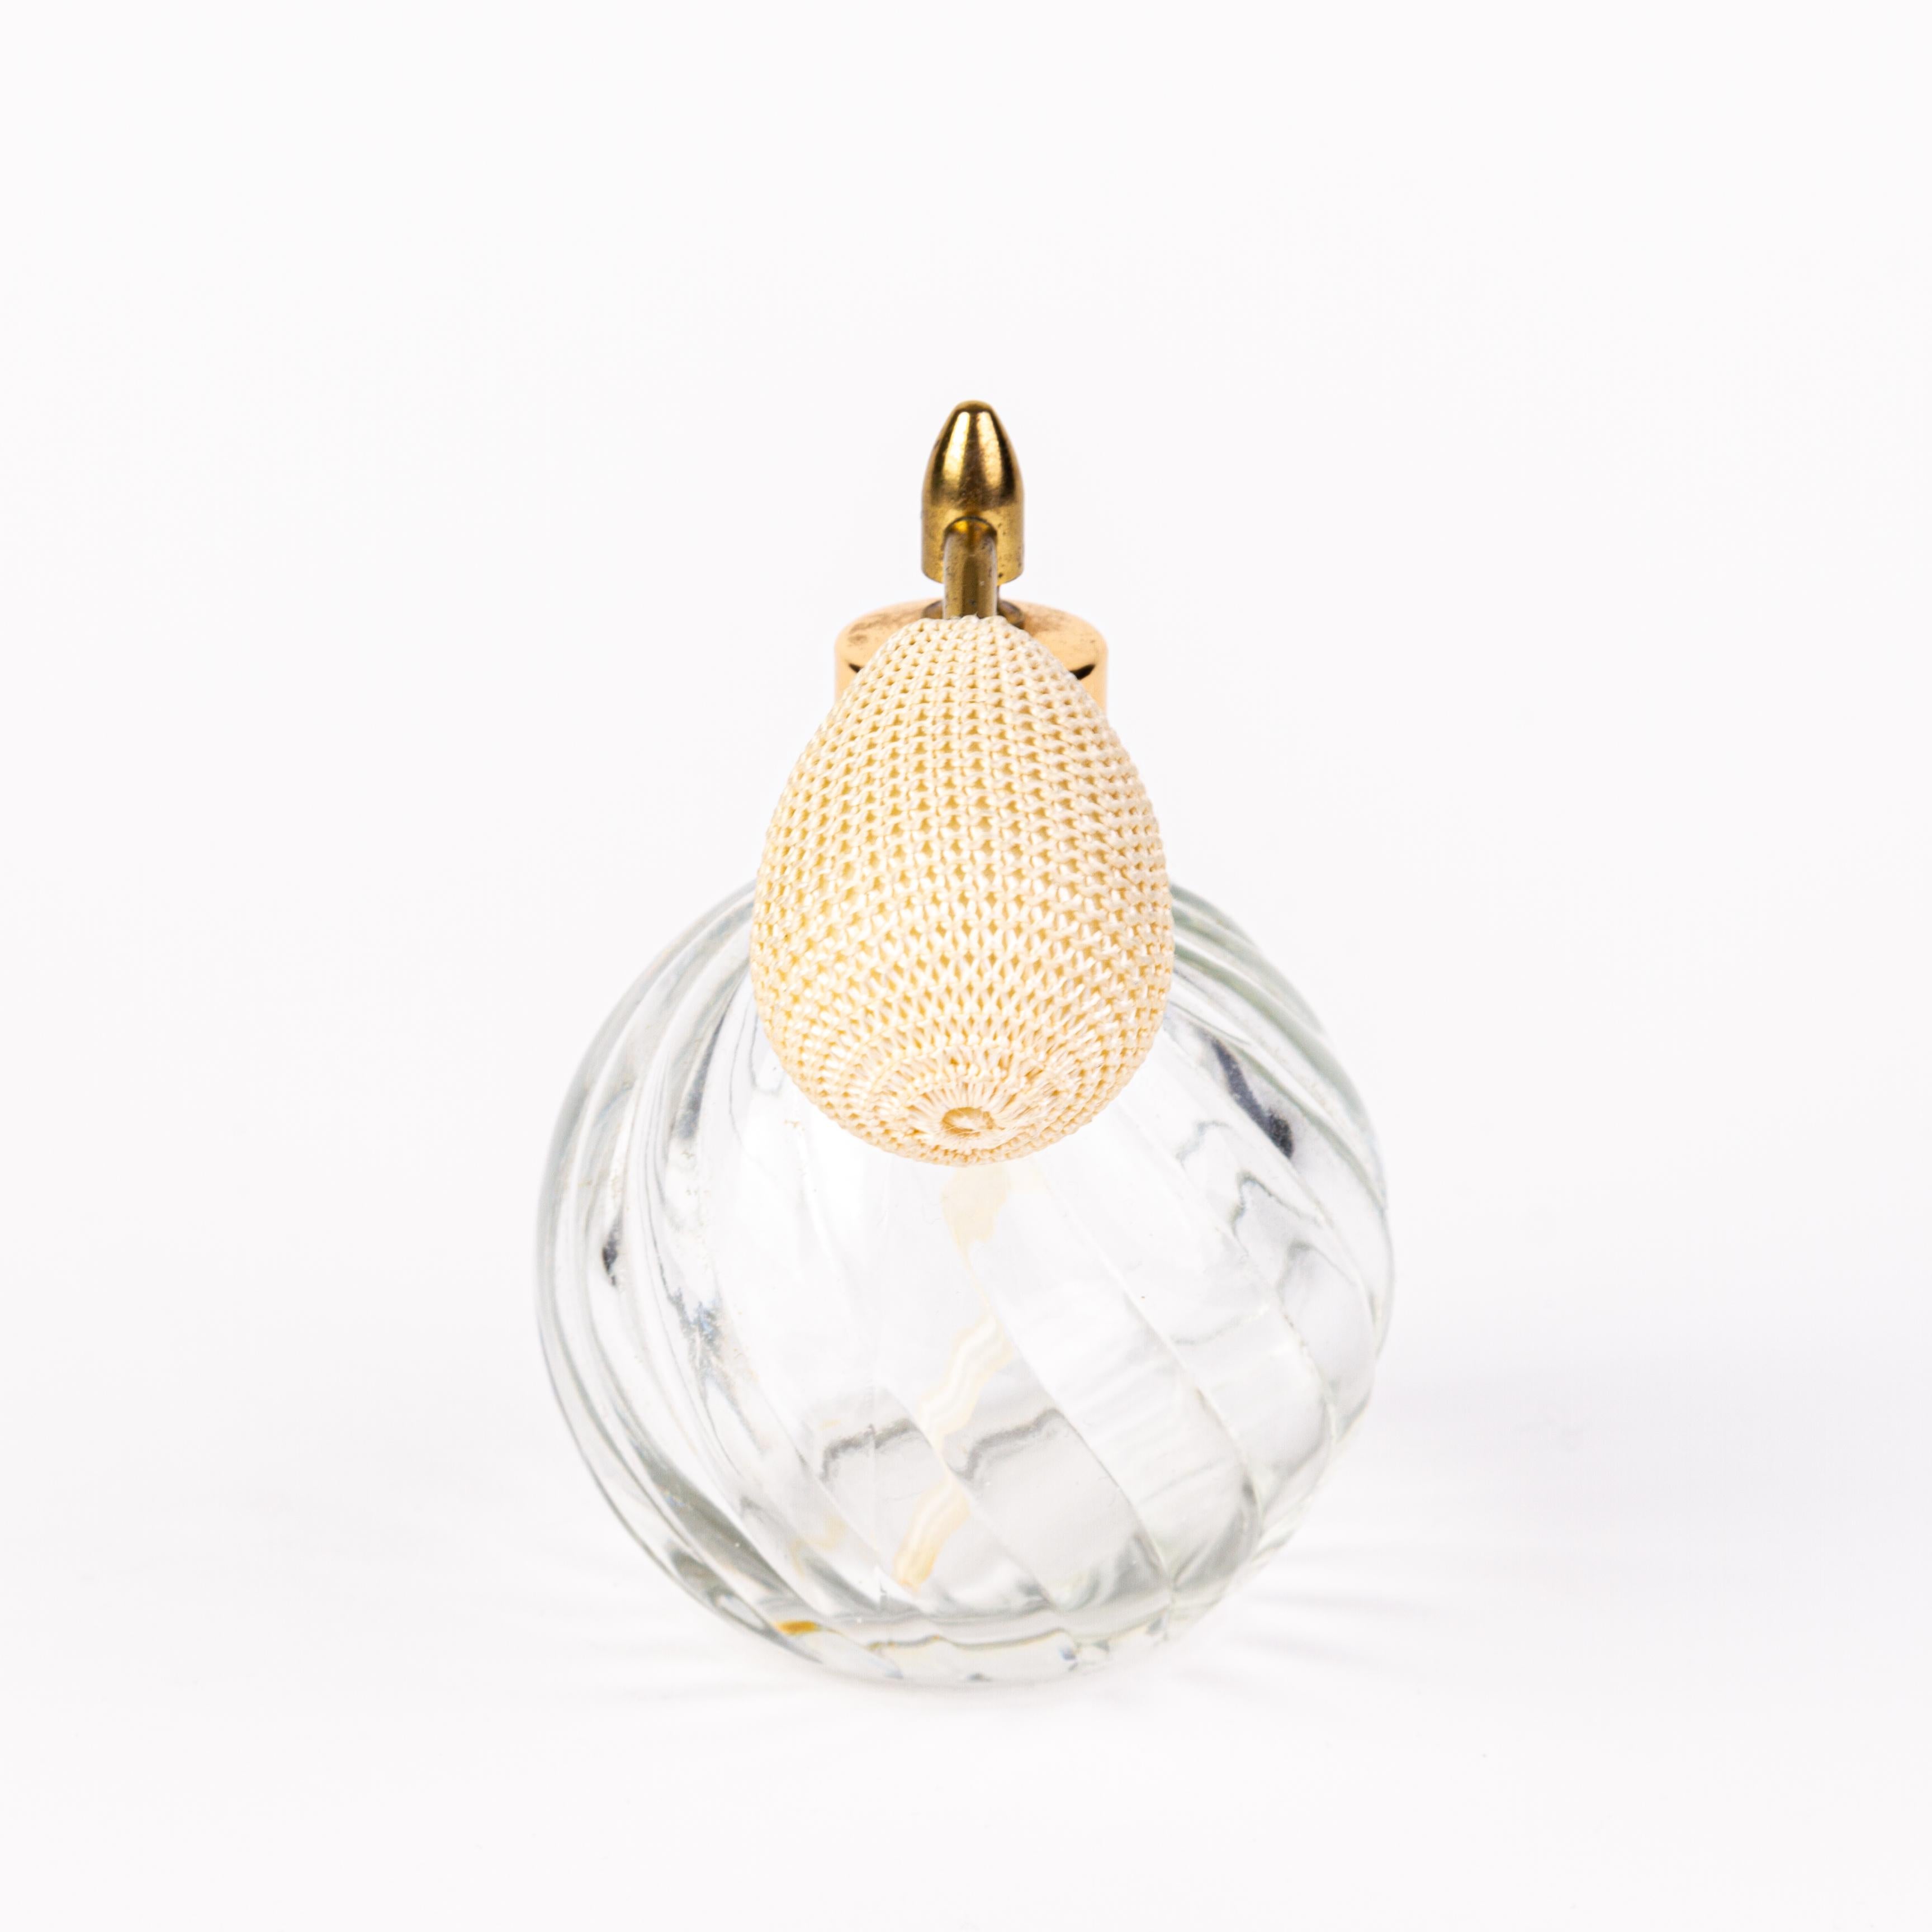 20th Century Venetian Crystal Glass Perfume Atomiser Bottle 